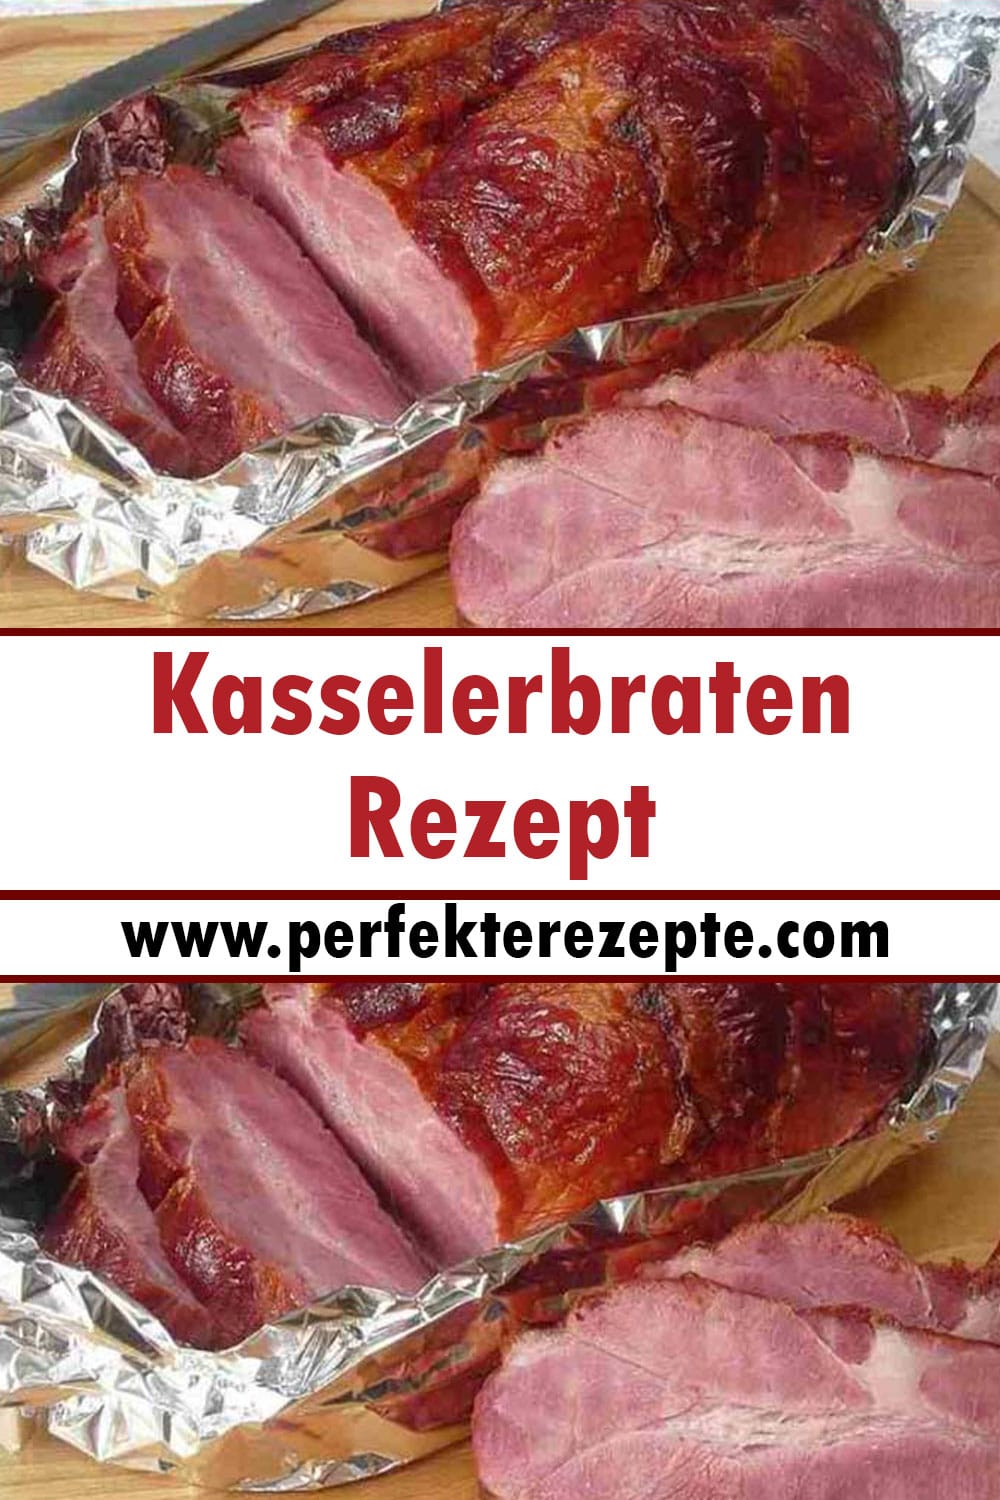 Kasselerbraten Rezept, so saftig und lecker war Kasseler noch nie!